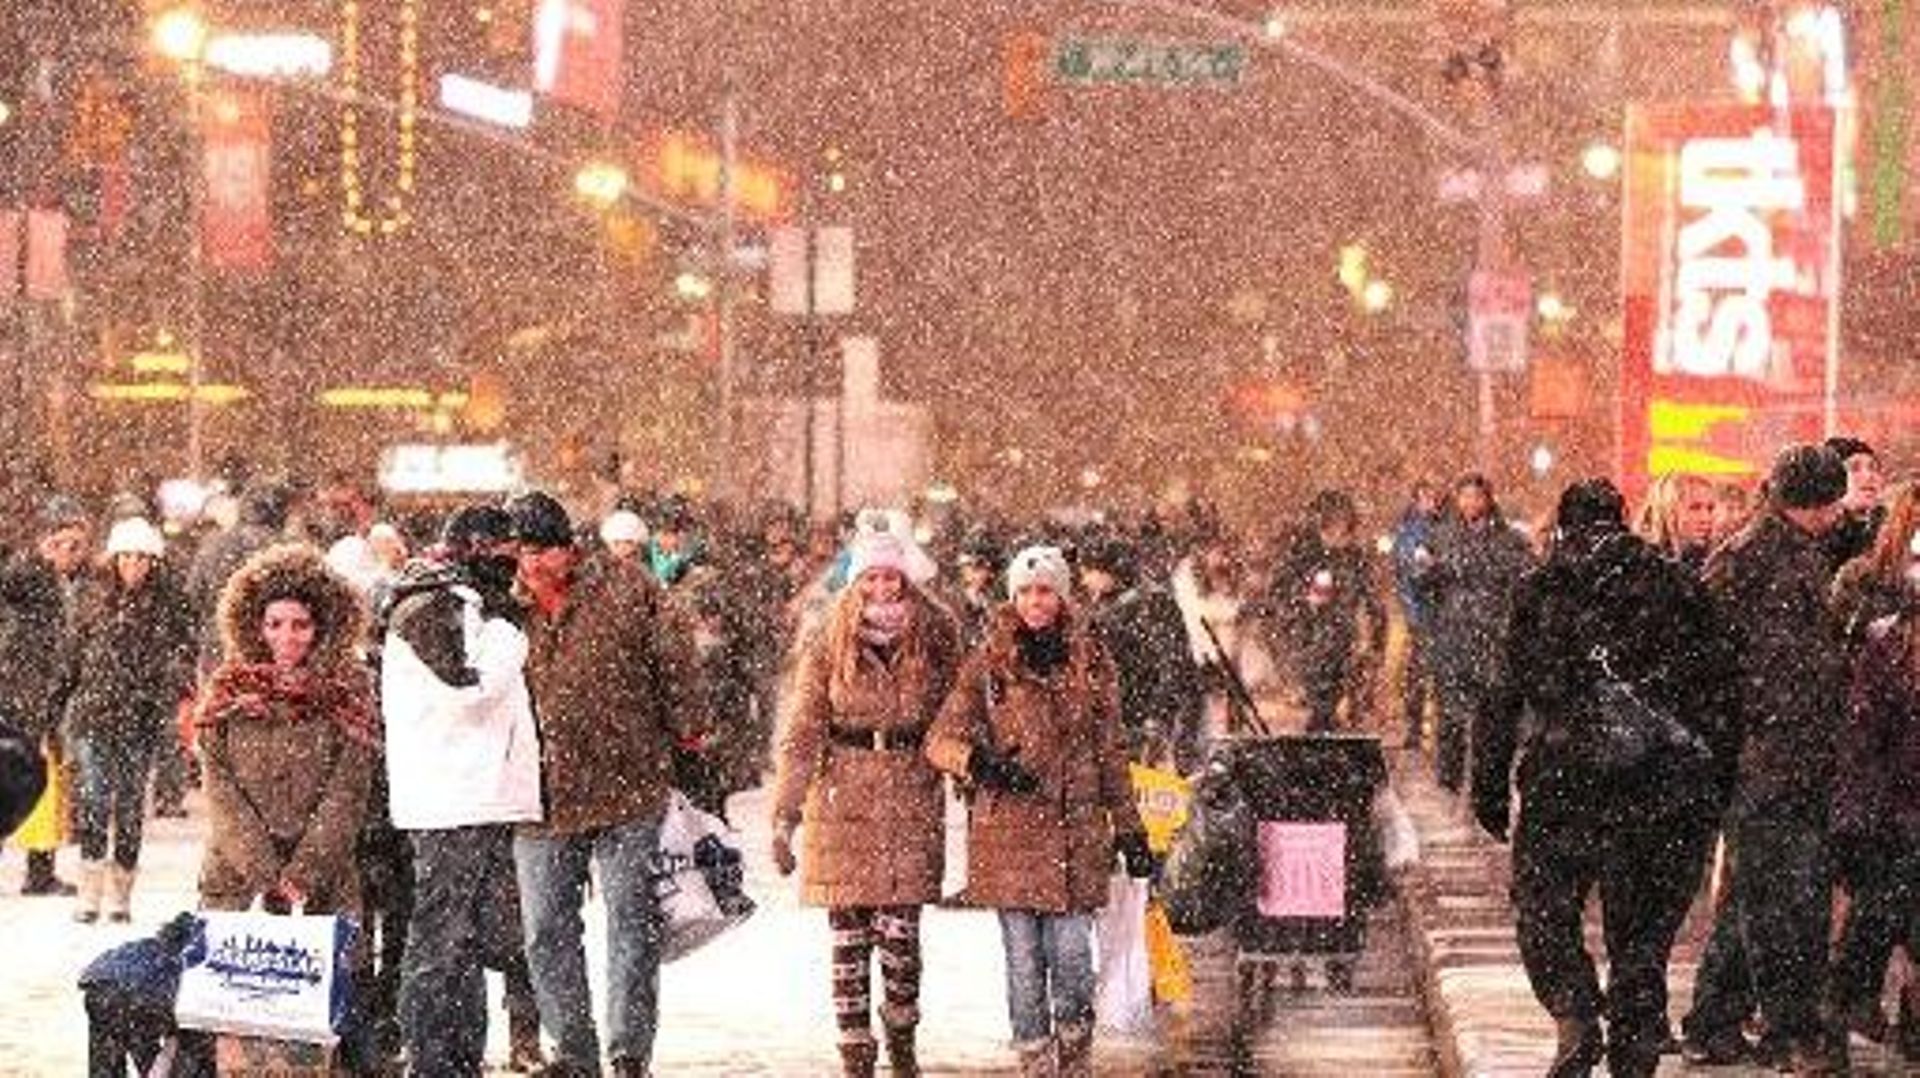 Des passants sous la neige le 2 janvier 2014 Times Square à Brodway 